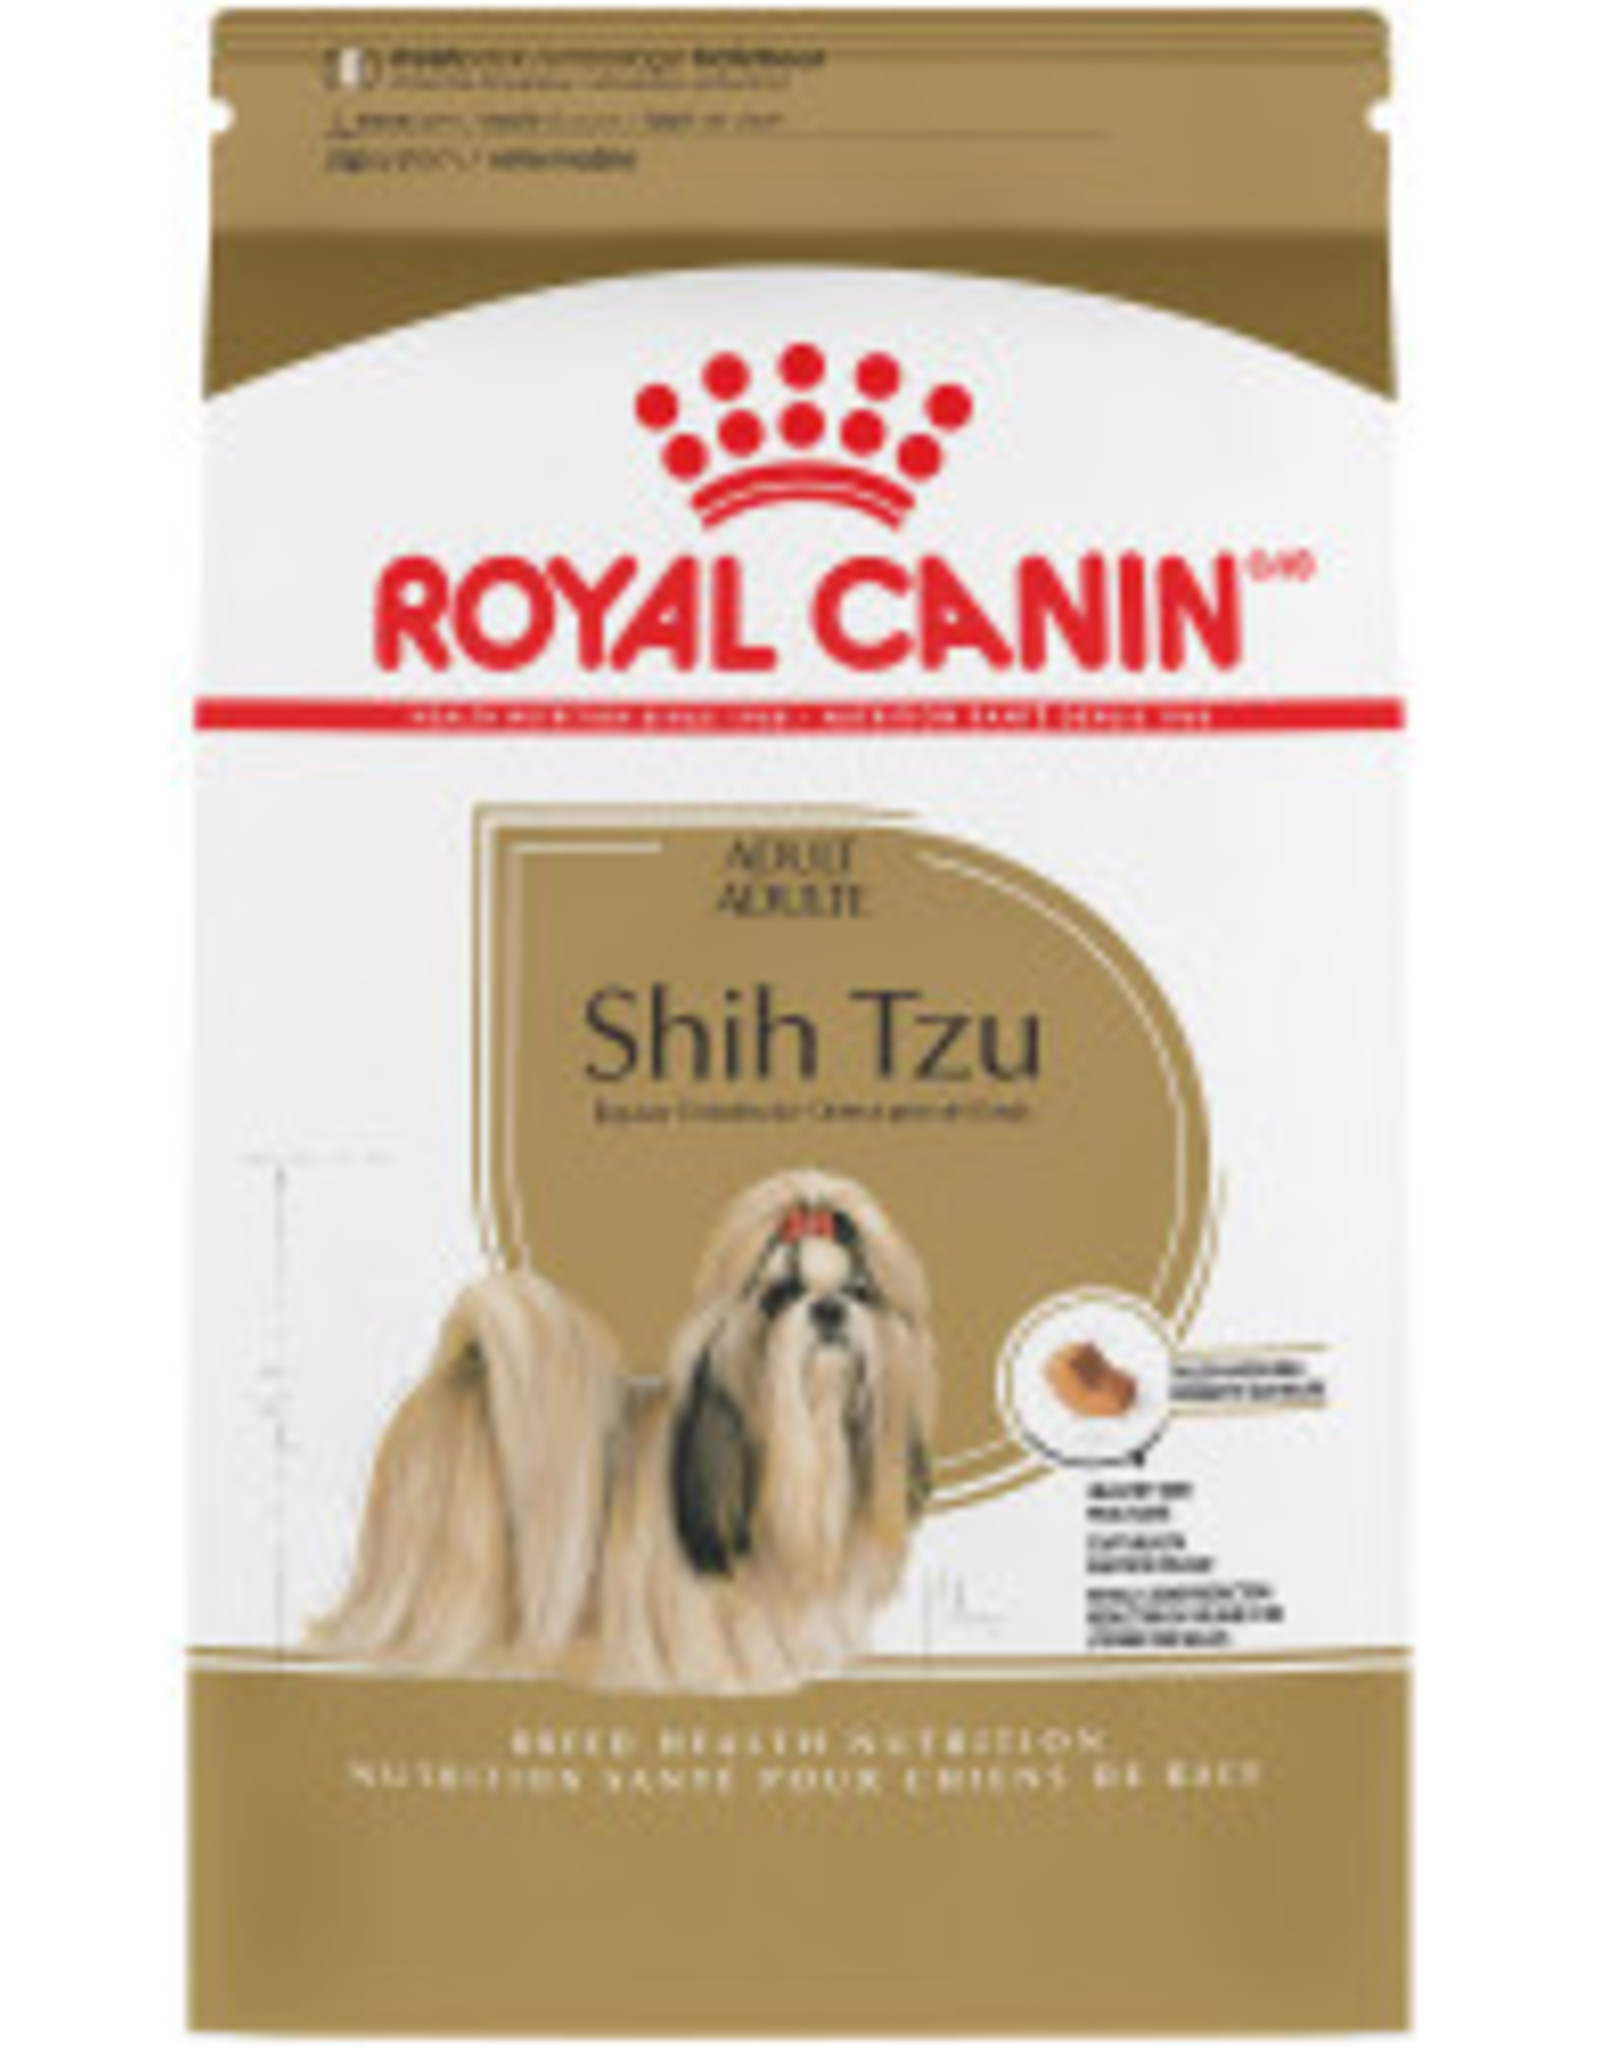 ROYAL CANIN ROYAL CANIN DOG SHIH TZU ADULT 2.5LBS